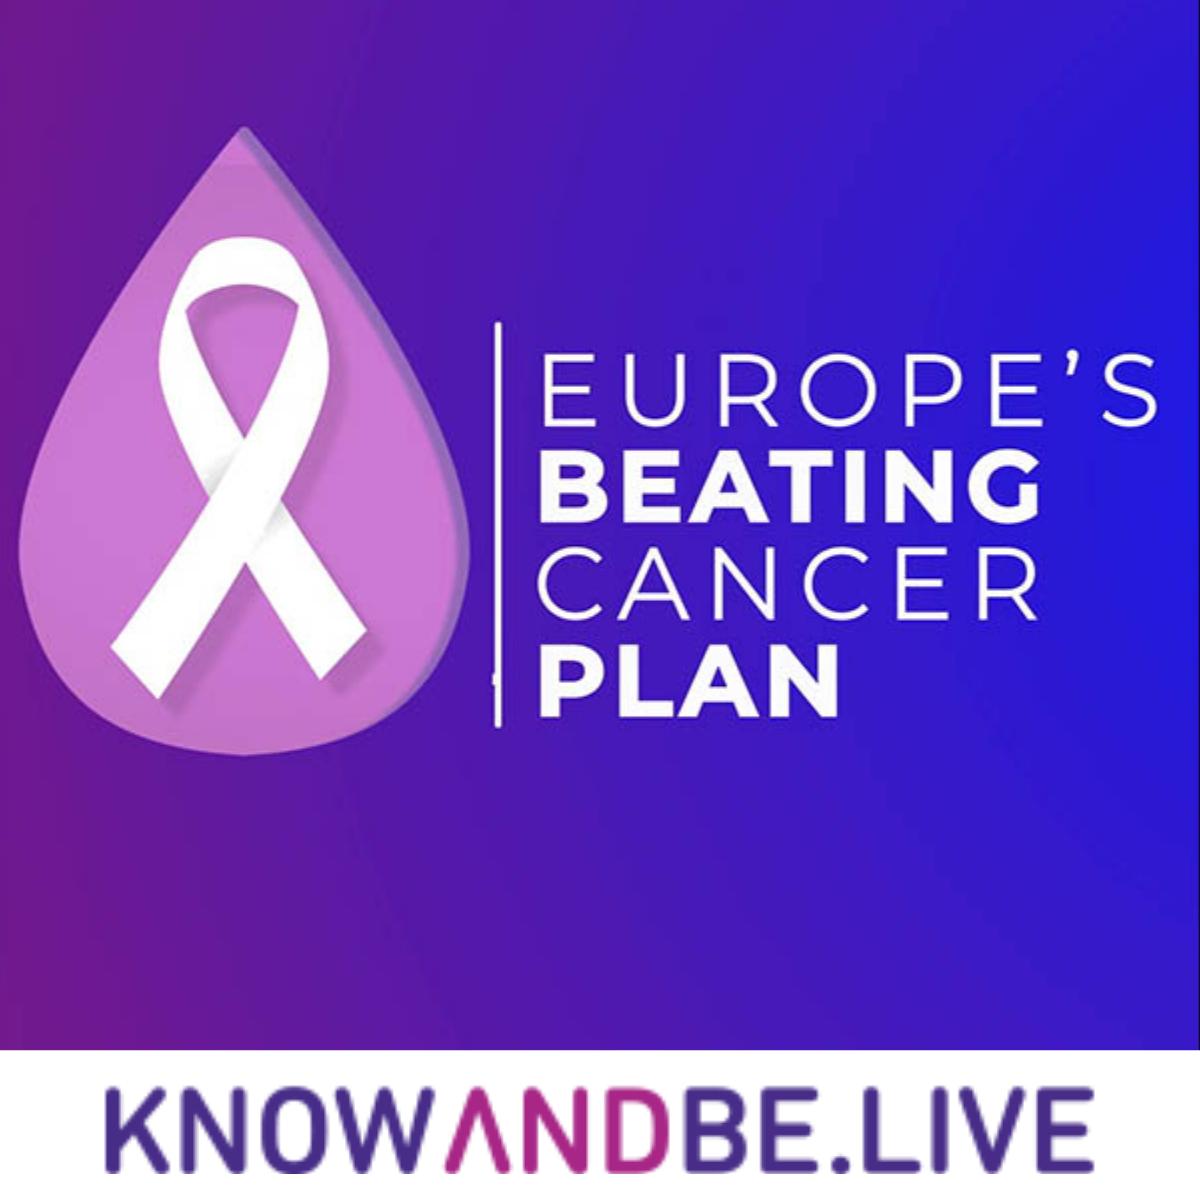 European plan against cancer - Knowandbe.live